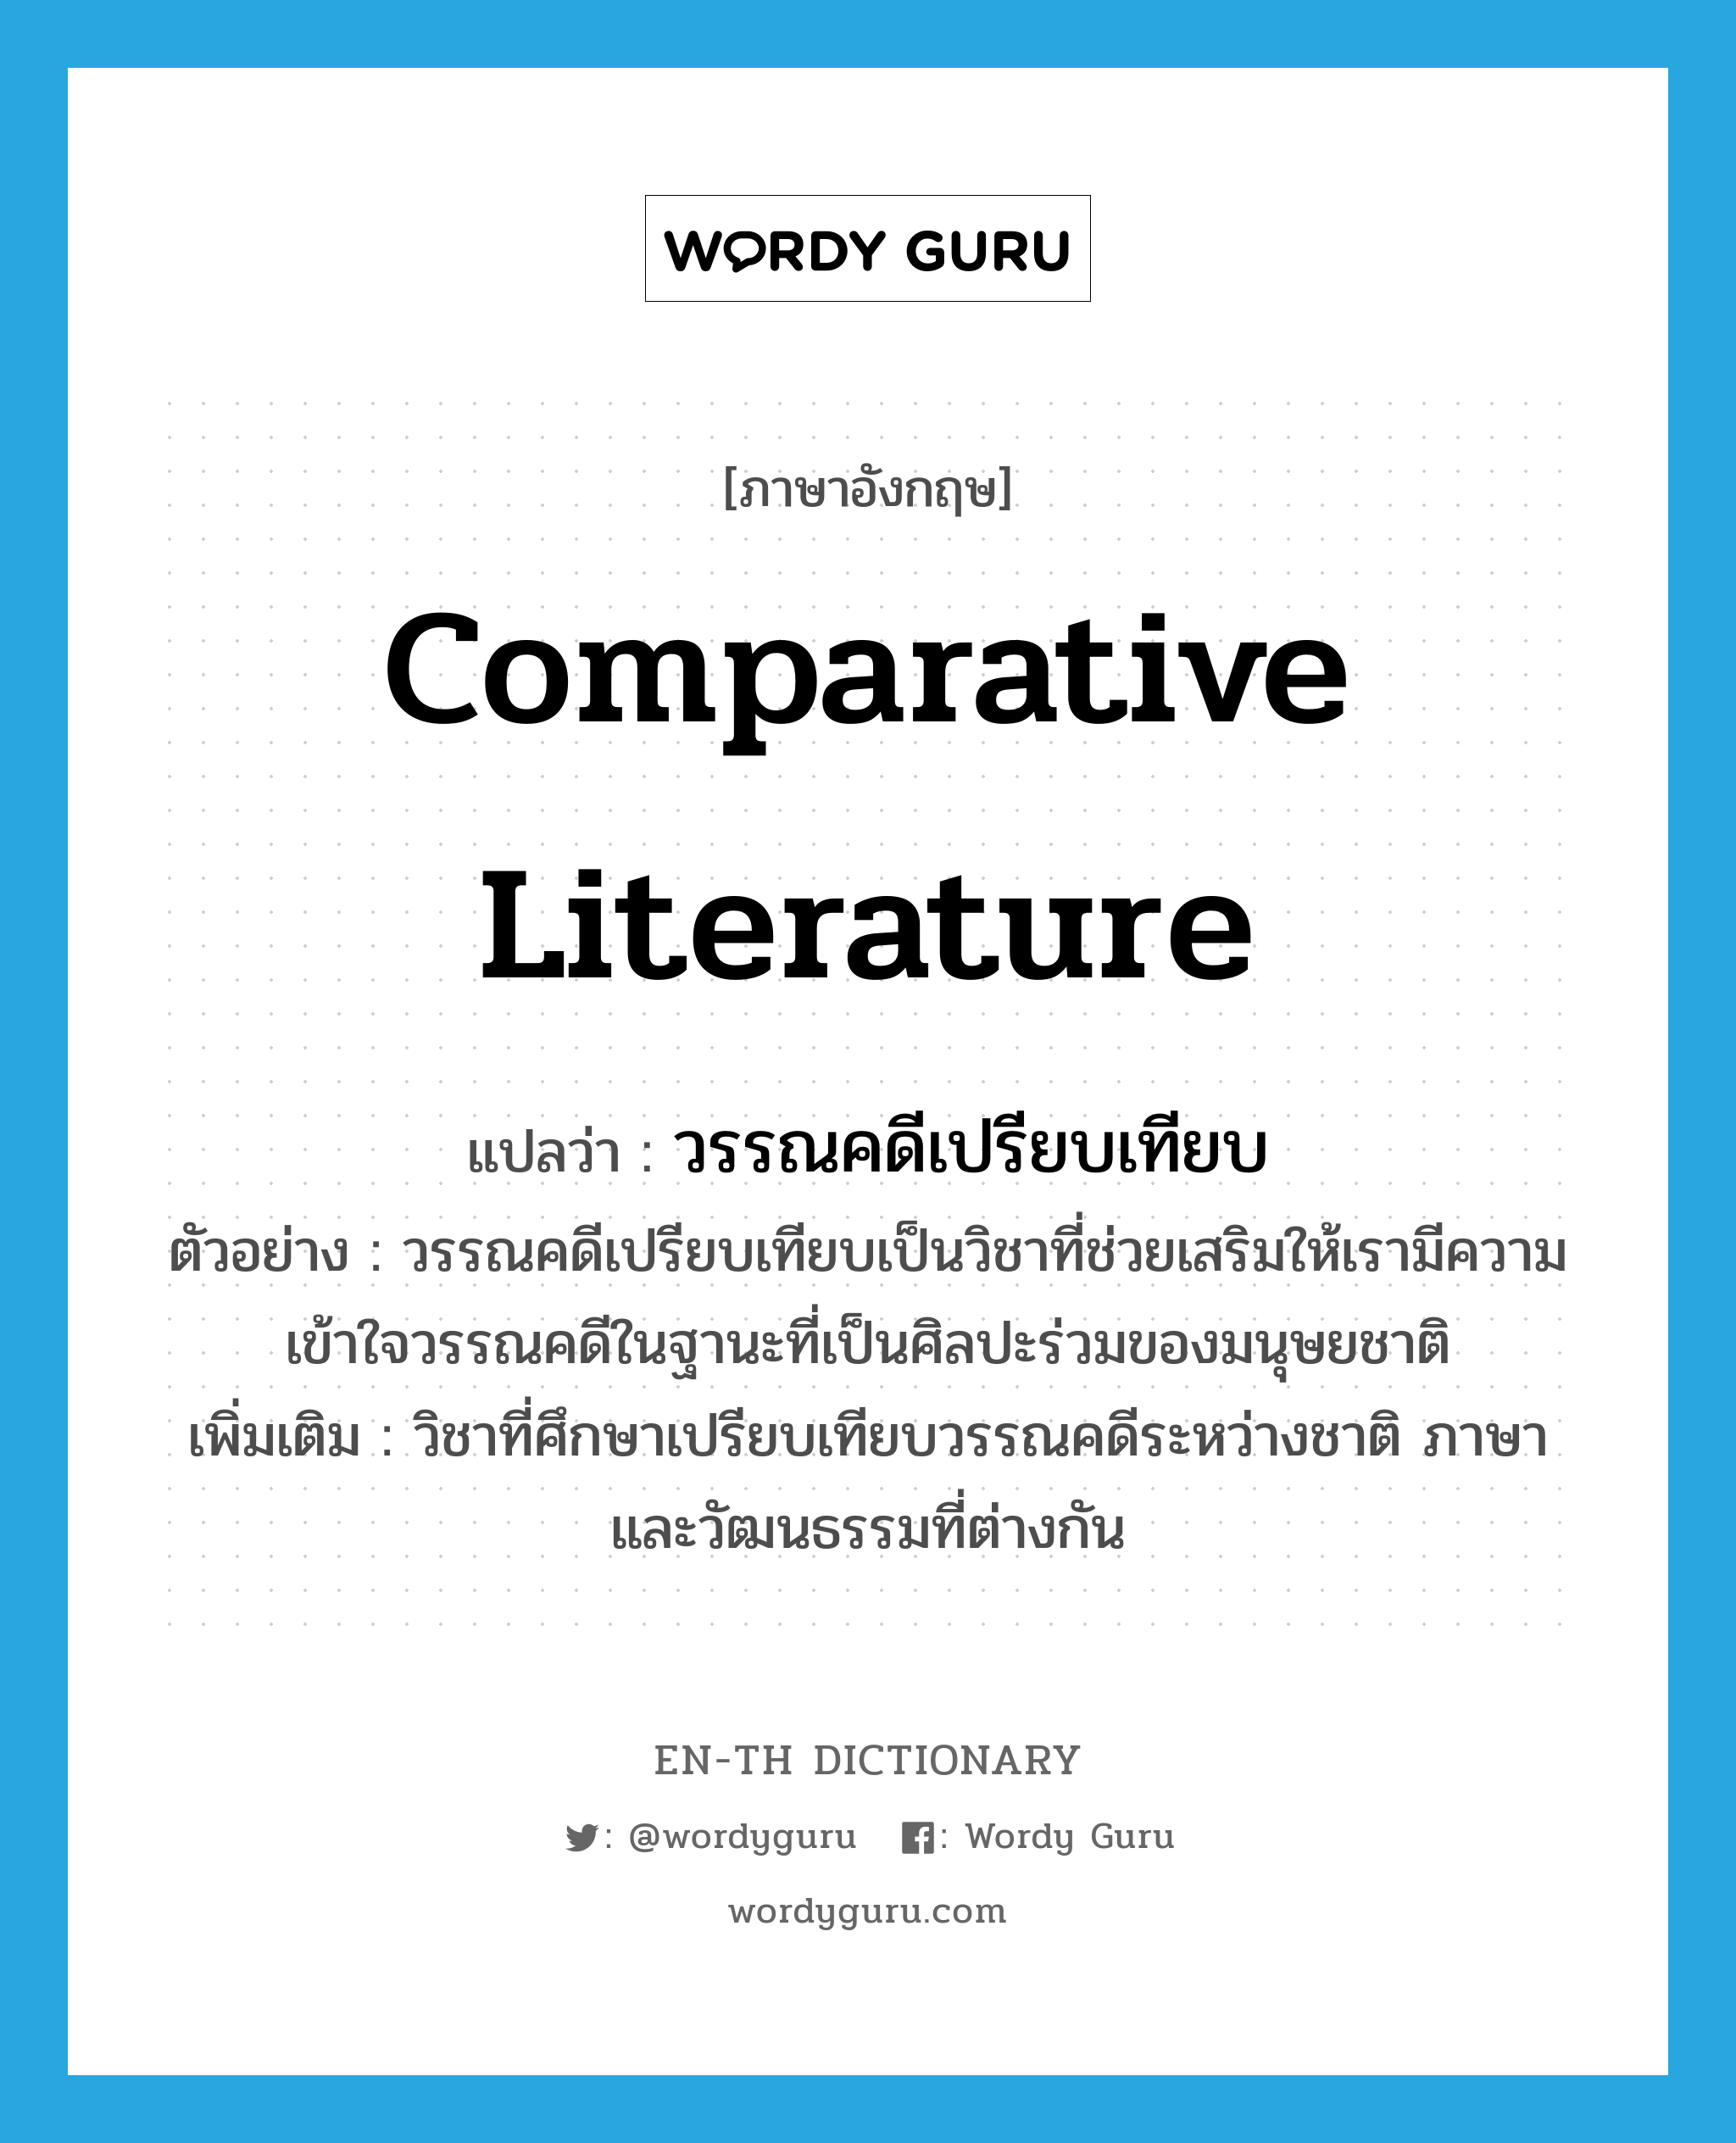 comparative literature แปลว่า?, คำศัพท์ภาษาอังกฤษ comparative literature แปลว่า วรรณคดีเปรียบเทียบ ประเภท N ตัวอย่าง วรรณคดีเปรียบเทียบเป็นวิชาที่ช่วยเสริมให้เรามีความเข้าใจวรรณคดีในฐานะที่เป็นศิลปะร่วมของมนุษยชาติ เพิ่มเติม วิชาที่ศึกษาเปรียบเทียบวรรณคดีระหว่างชาติ ภาษาและวัฒนธรรมที่ต่างกัน หมวด N